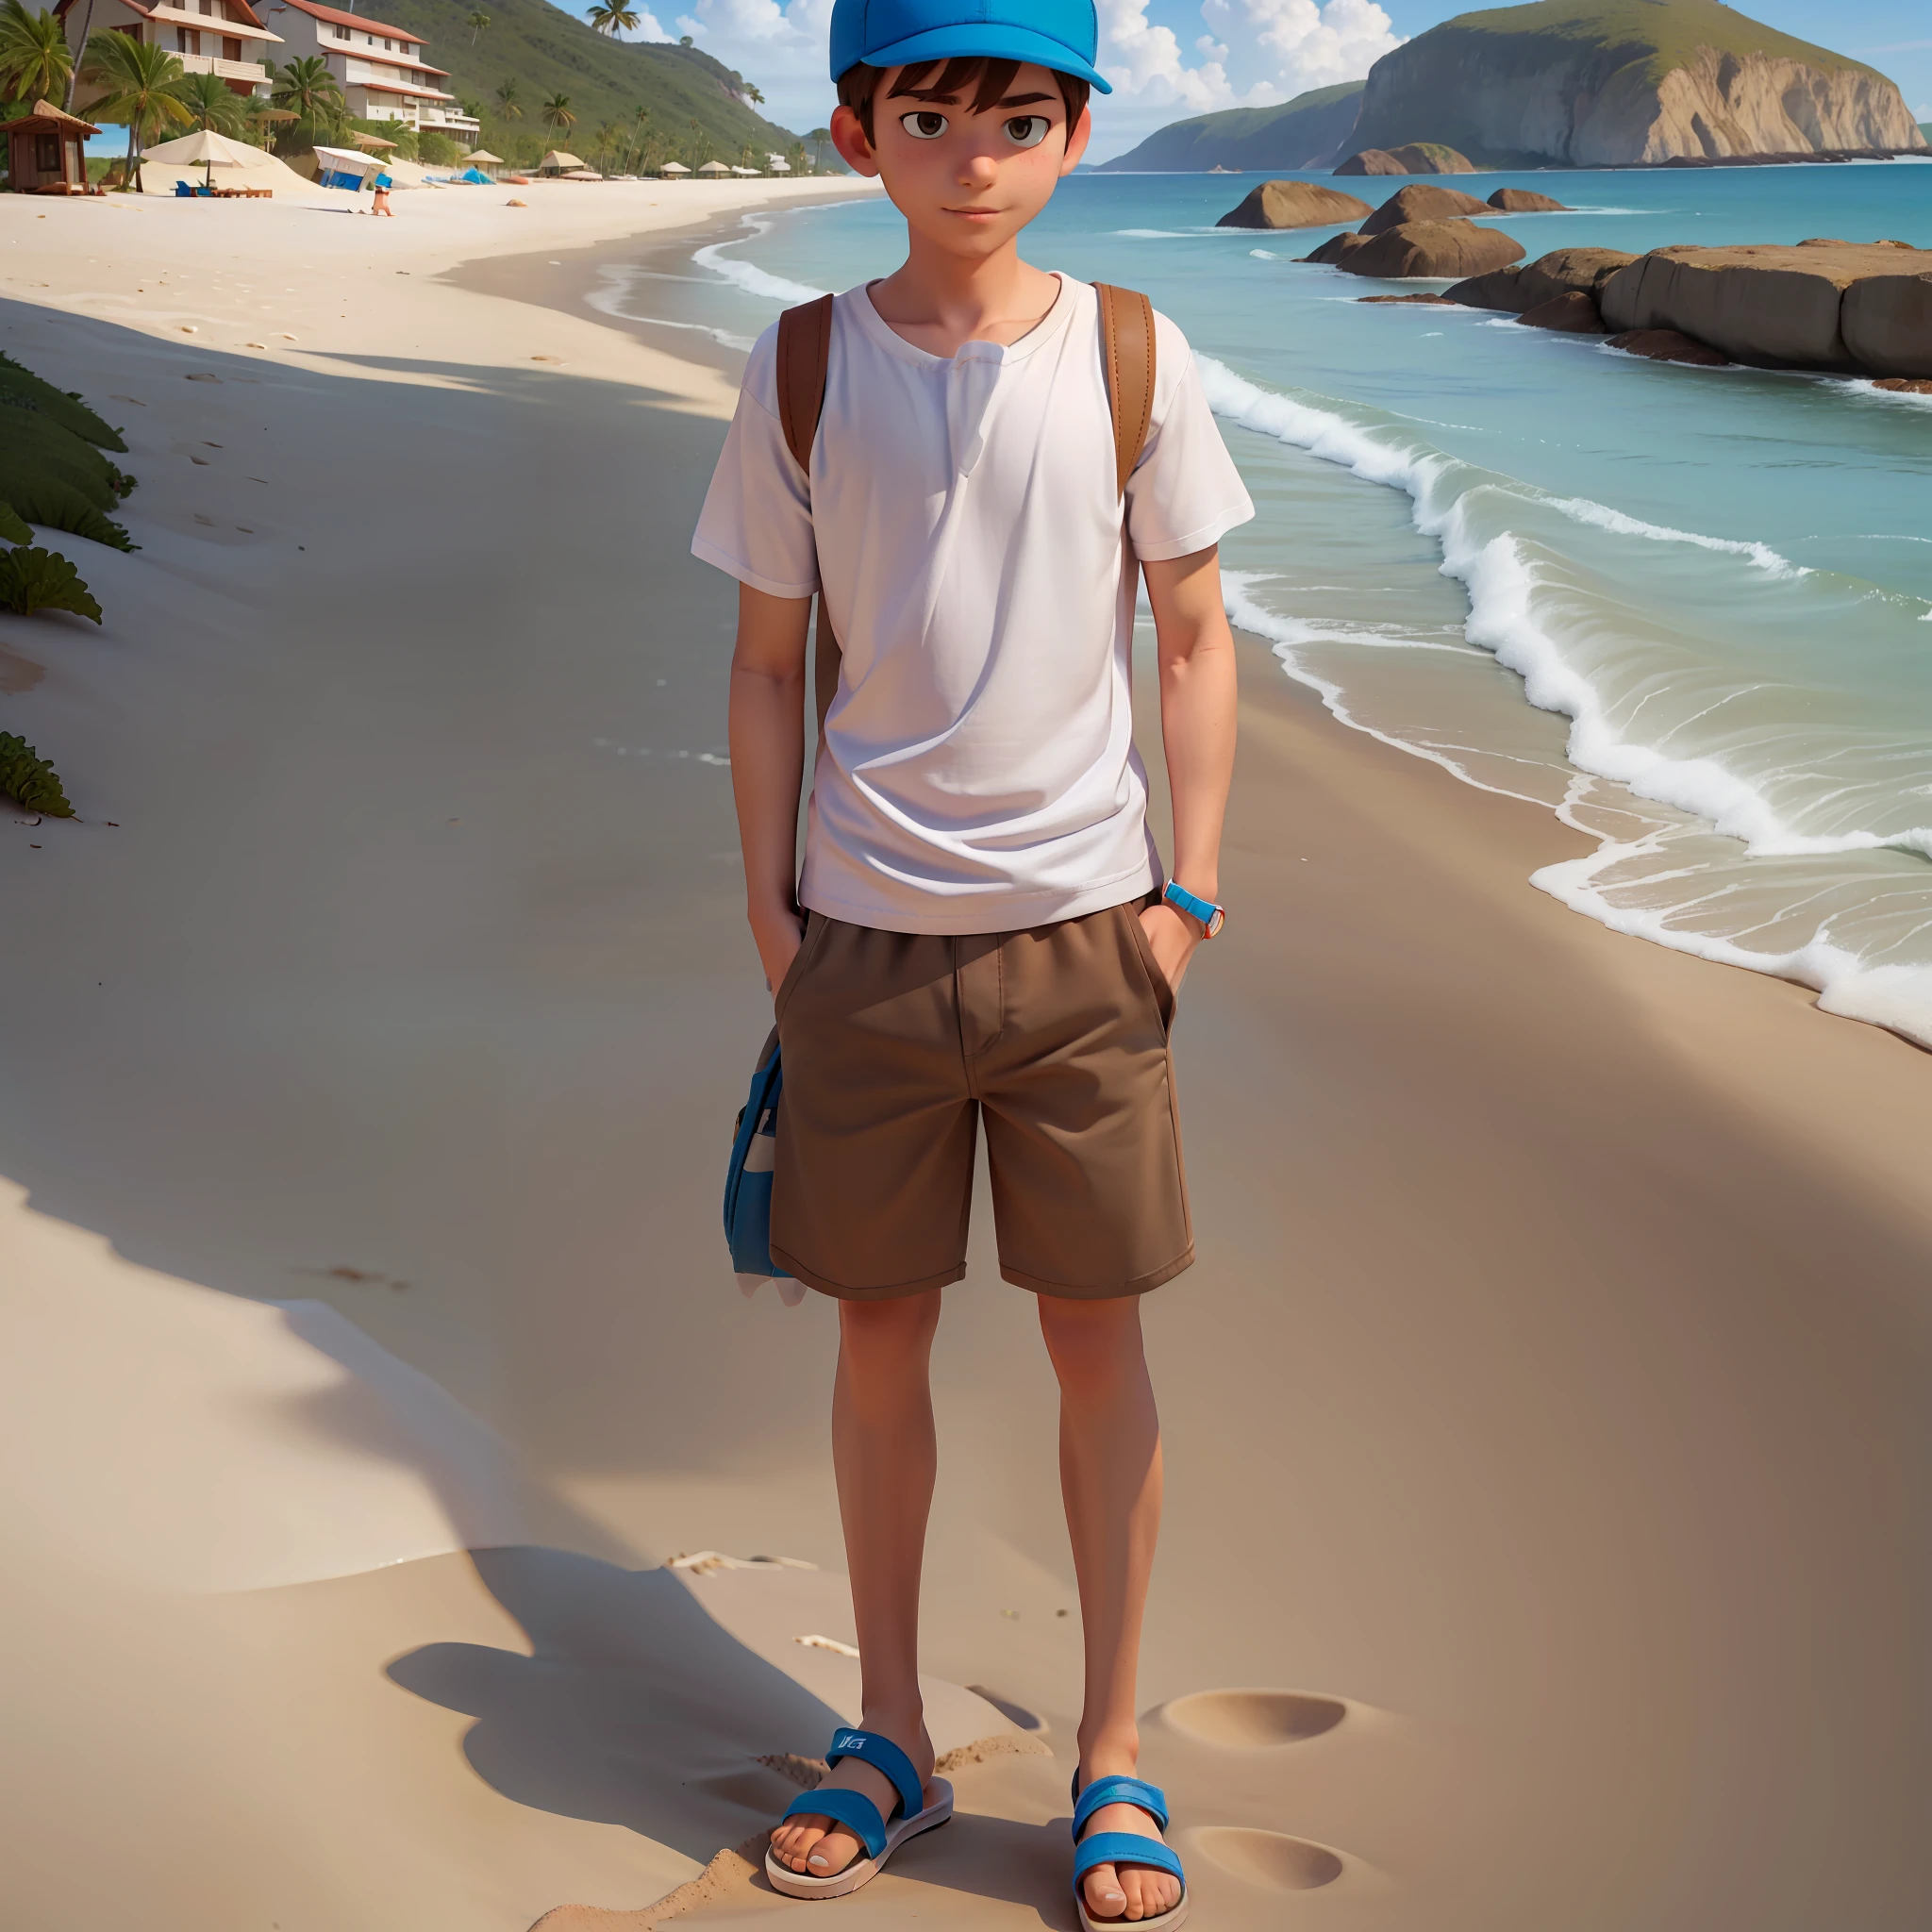 (1 süßer Charakter namens Mike), (trägt ein weißes T-Shirt, hat, braune Shorts, Flip-Flops), (Strand im Hintergrund)